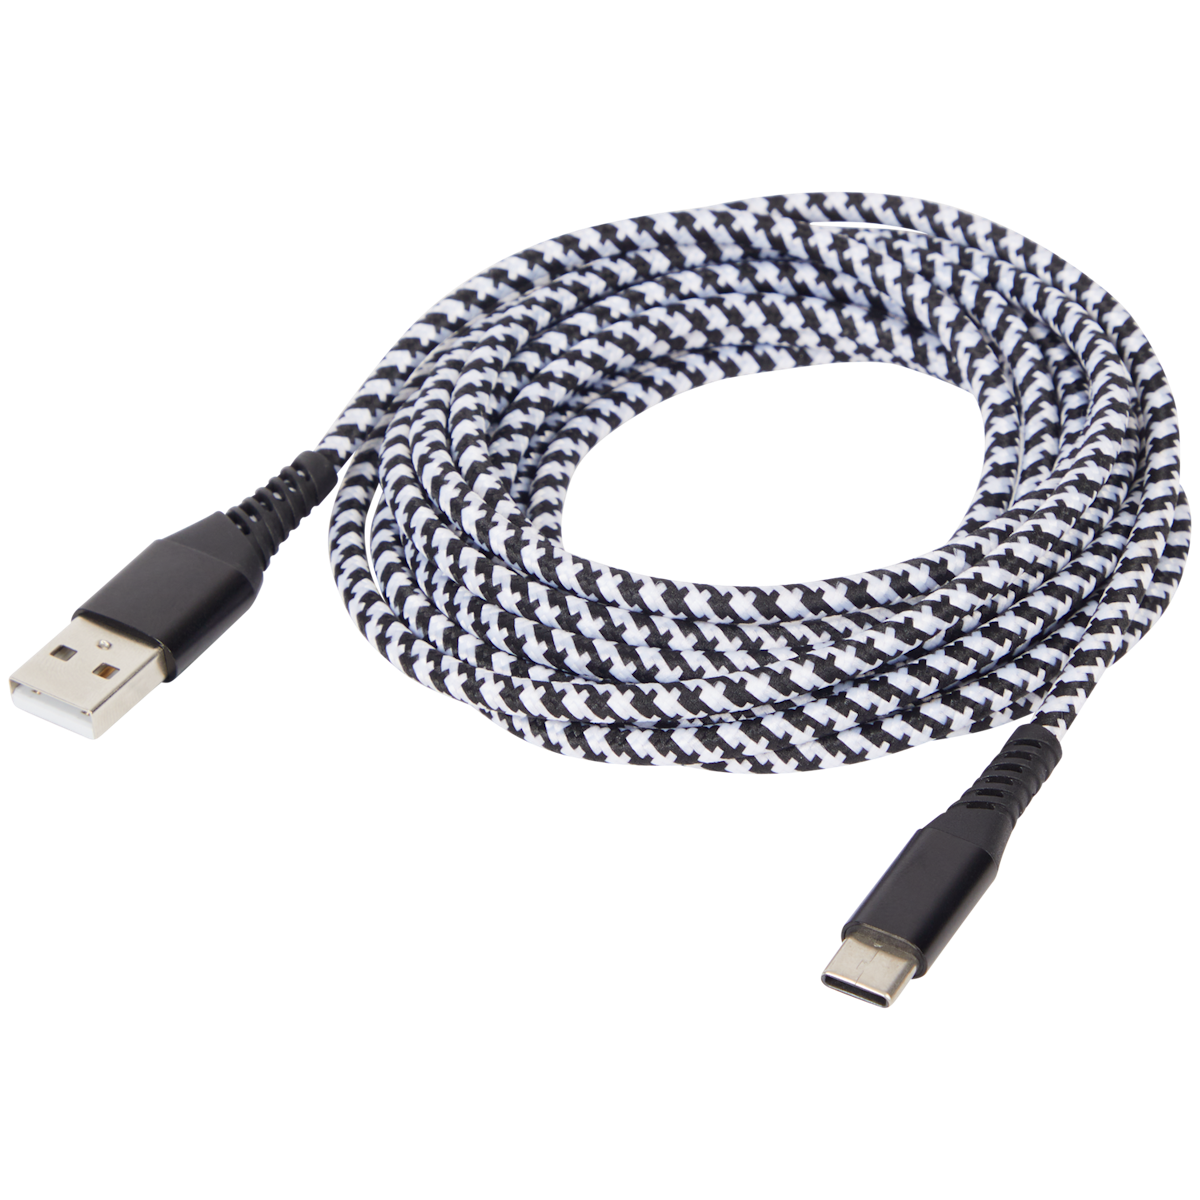 Cable de carga y datos Sologic USB-A a USB-C